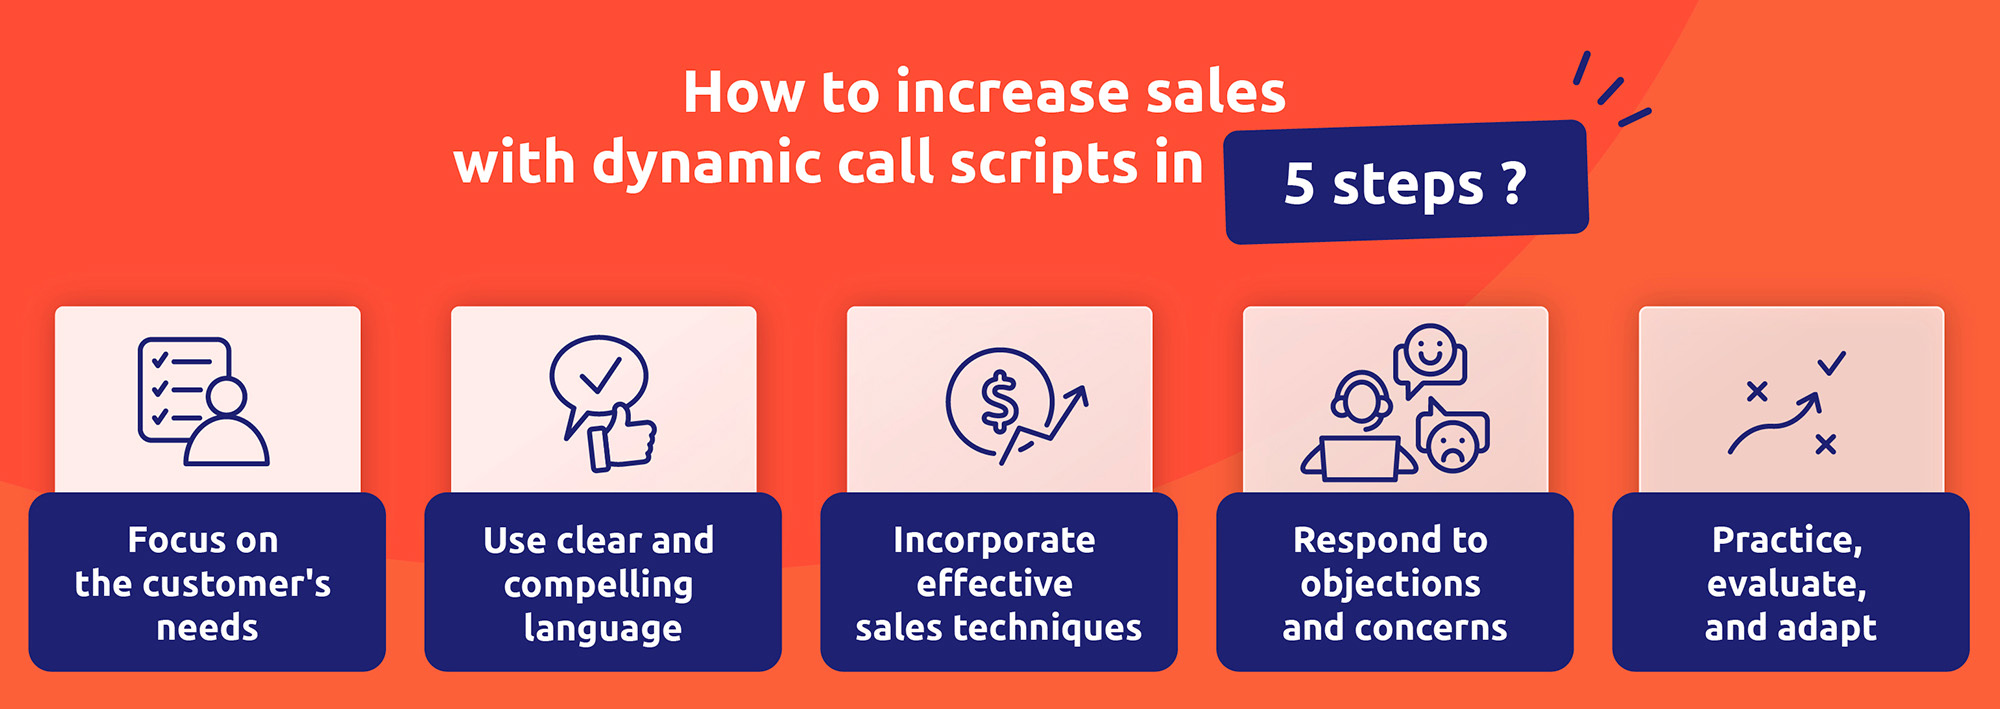 Una estrategia para aumentar las ventas con guiones de llamada dinámicos en 5 pasos